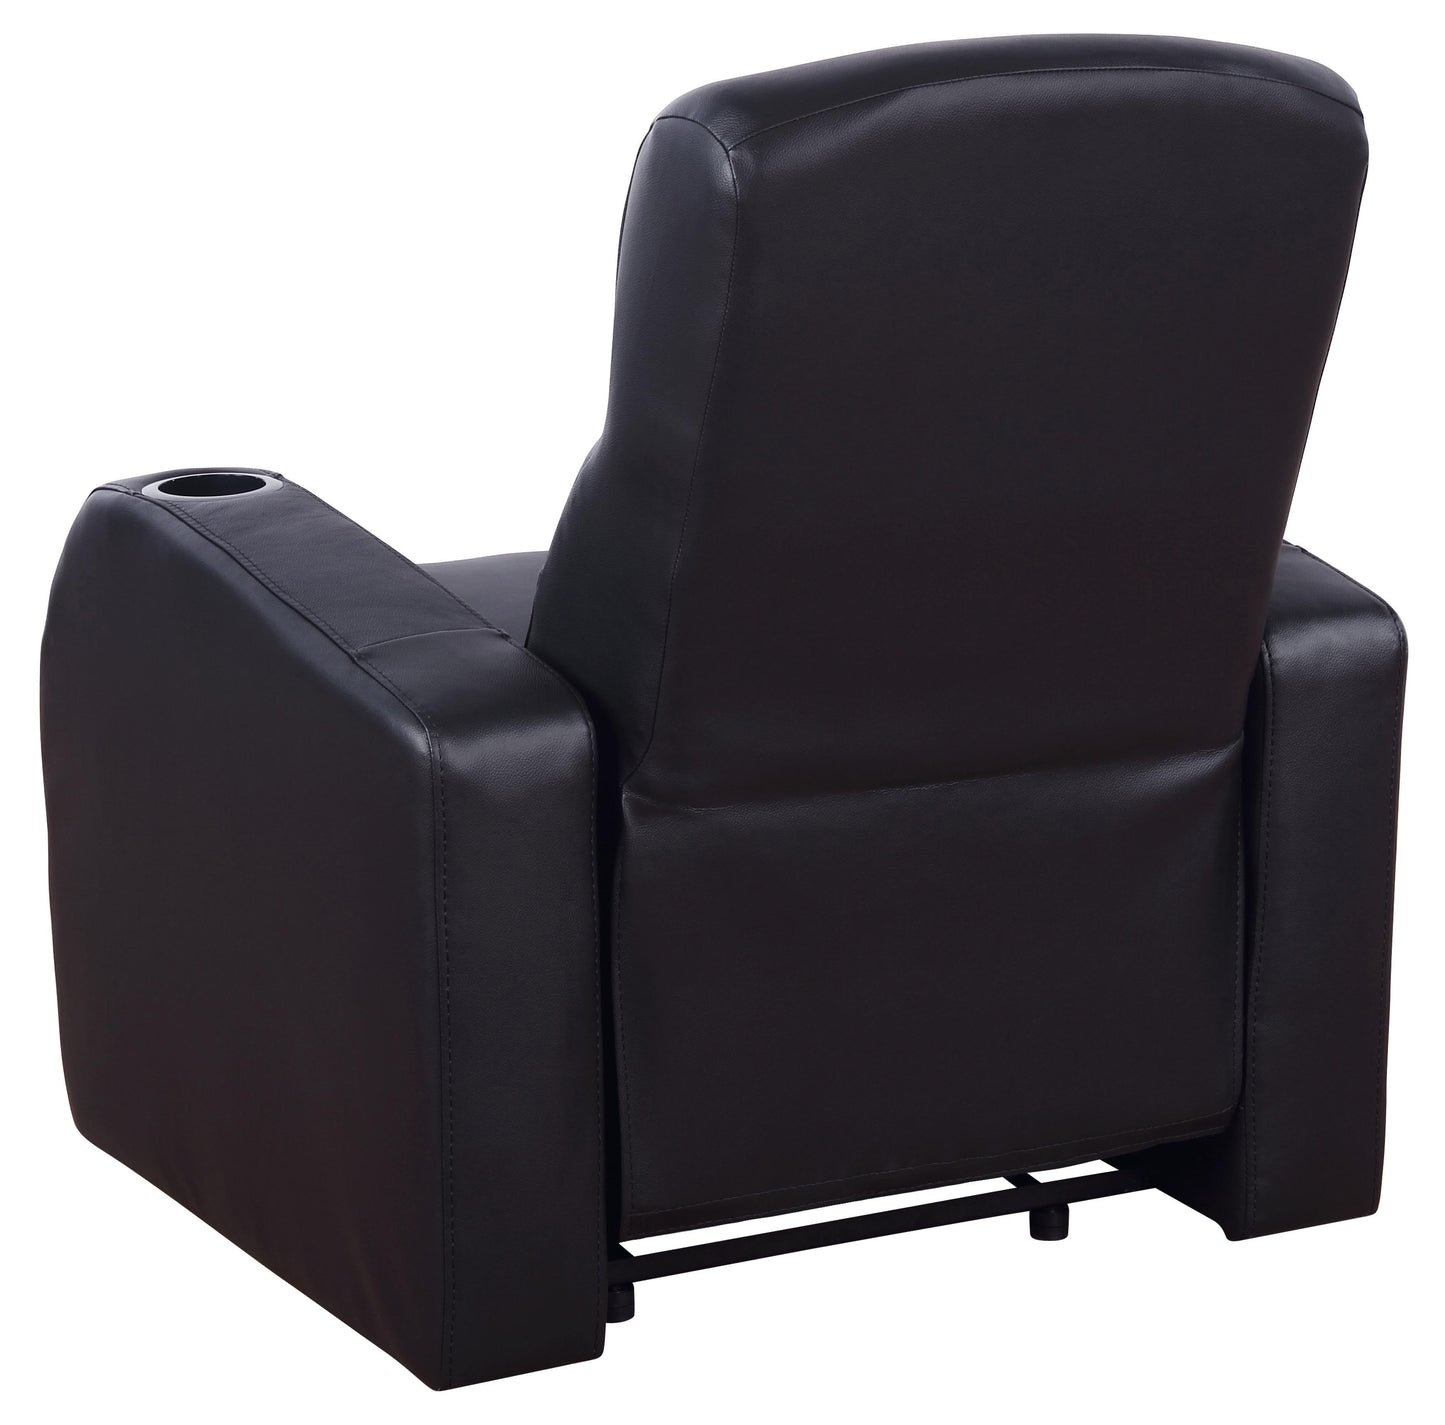 Cyrus Upholstered Recliner Living Room Set Black